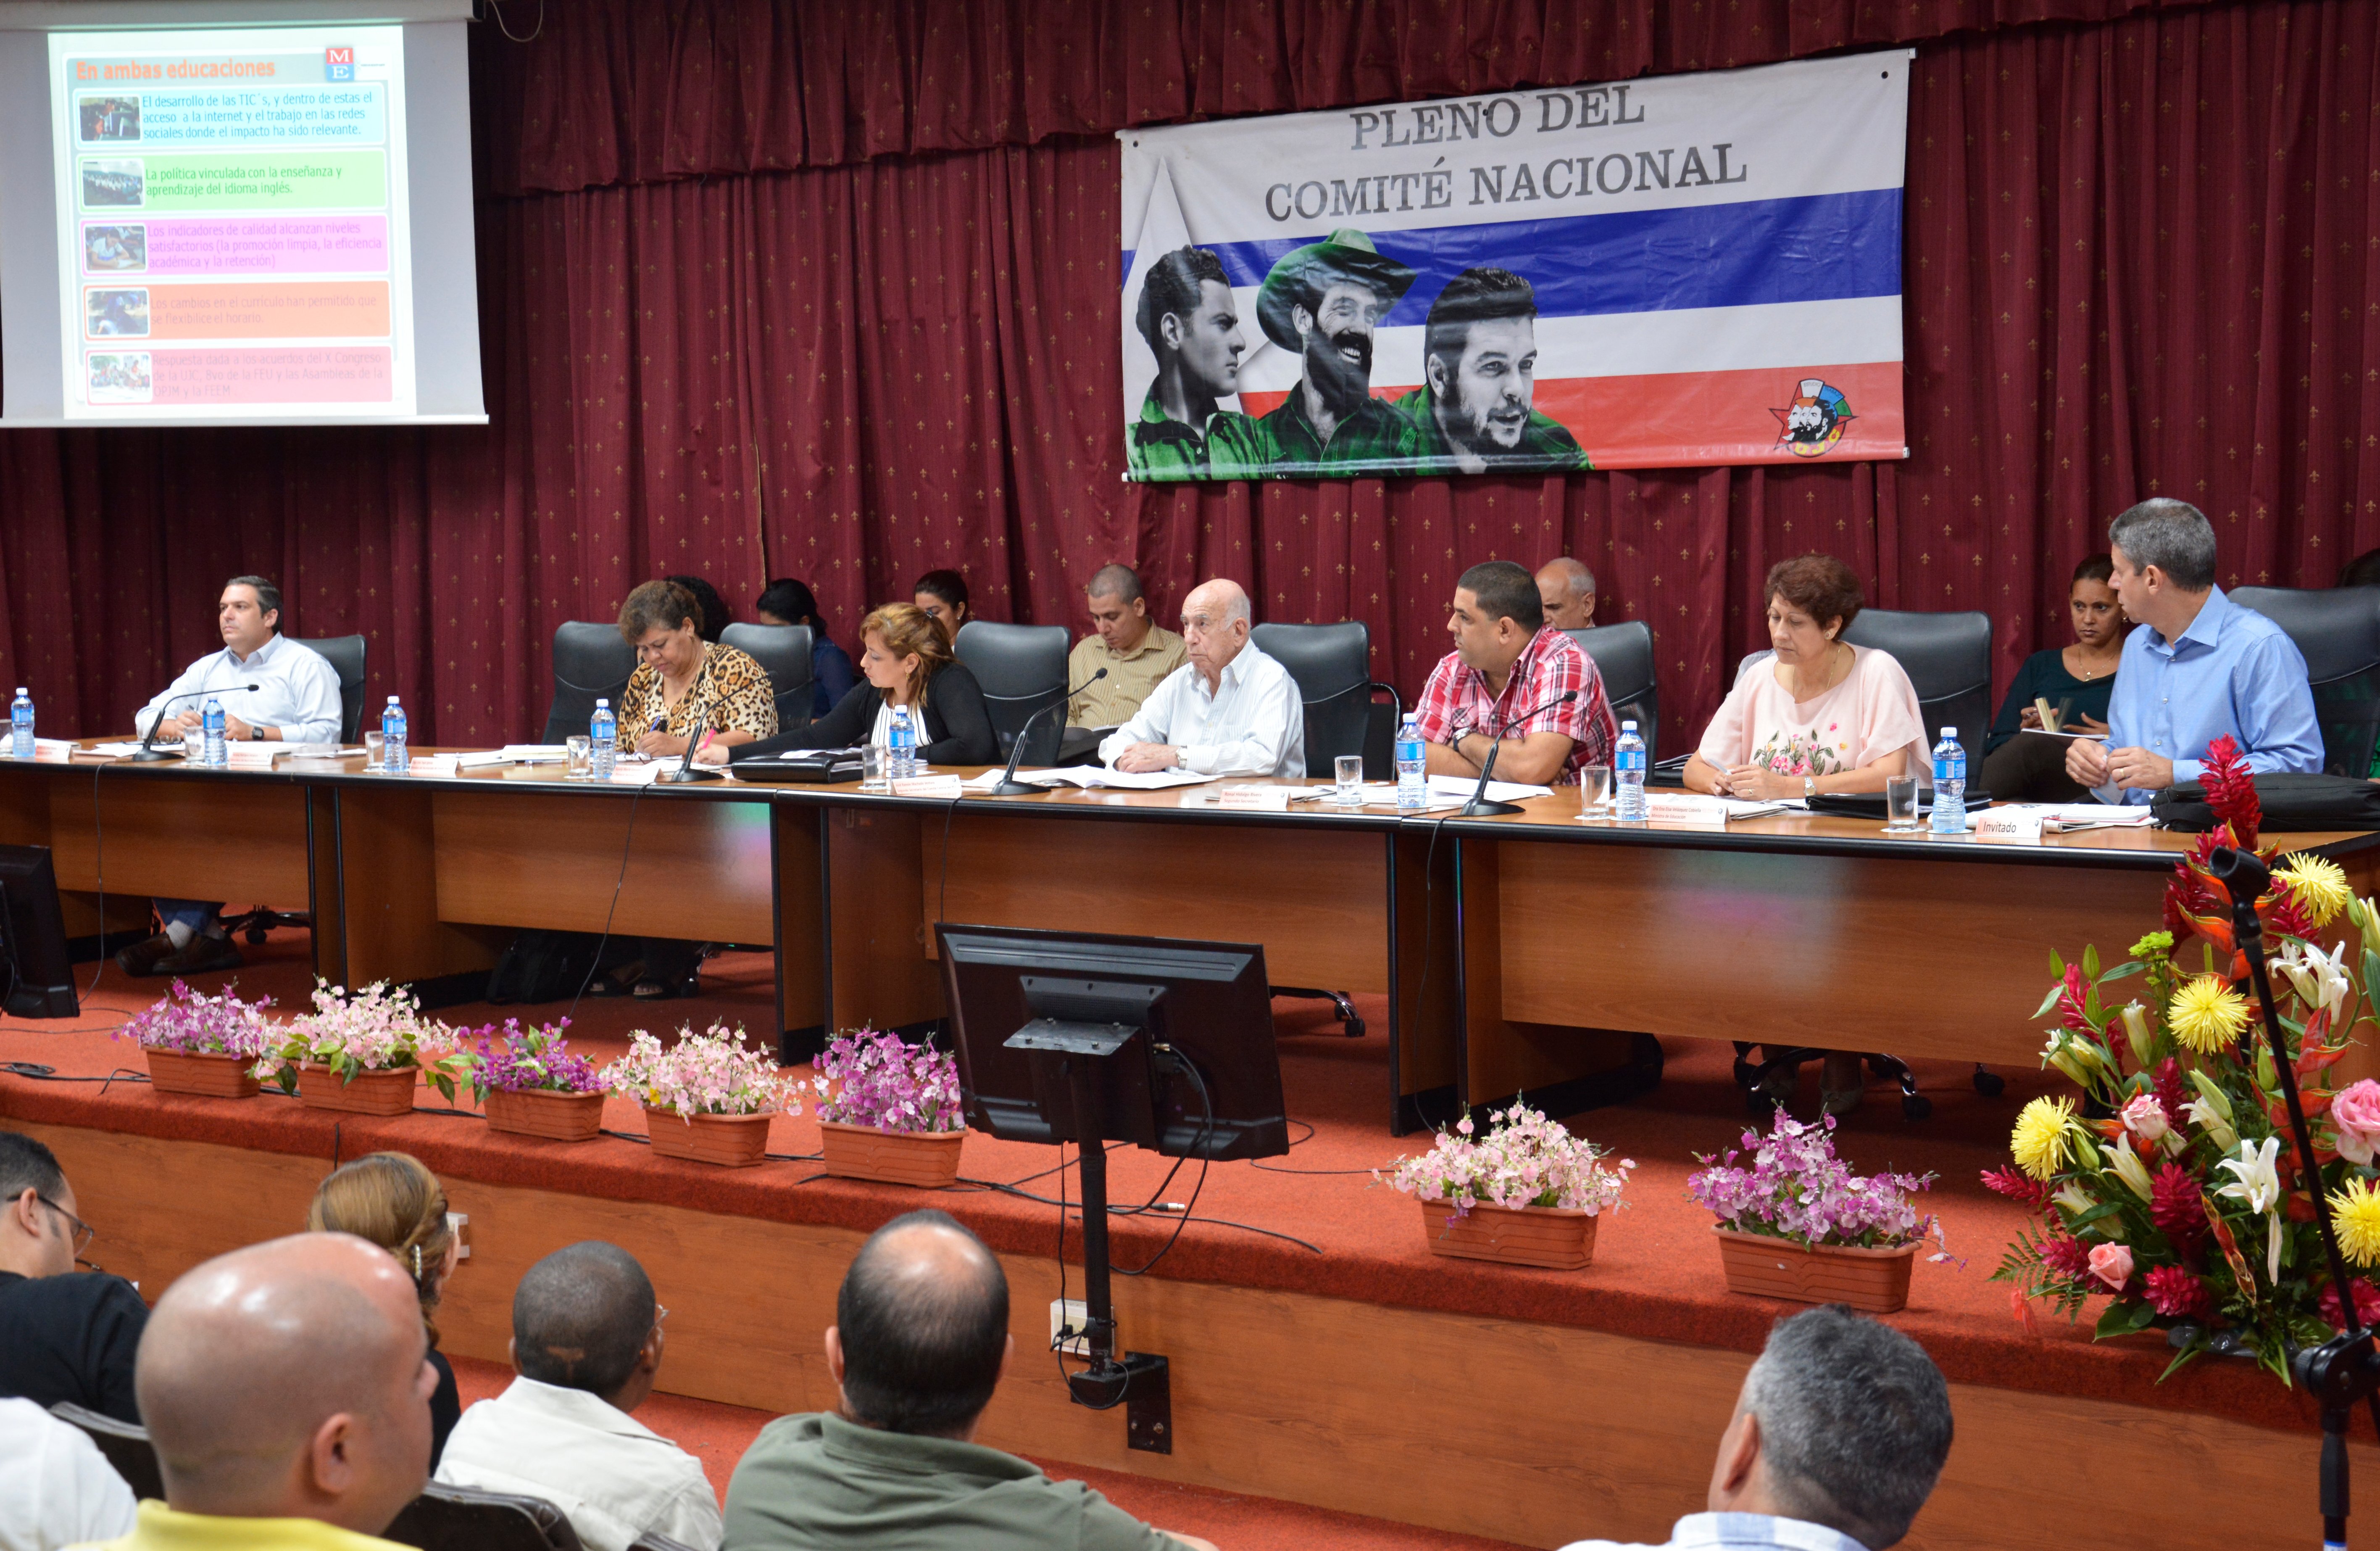 José Ramón Machado Ventura, Segundo Secretario del Comité Central del Partido Comunista de Cuba, asiste a la Sesión Plenaria del 7mo Pleno del Comité Nacional de la Unión de Jóvenes Comunistas